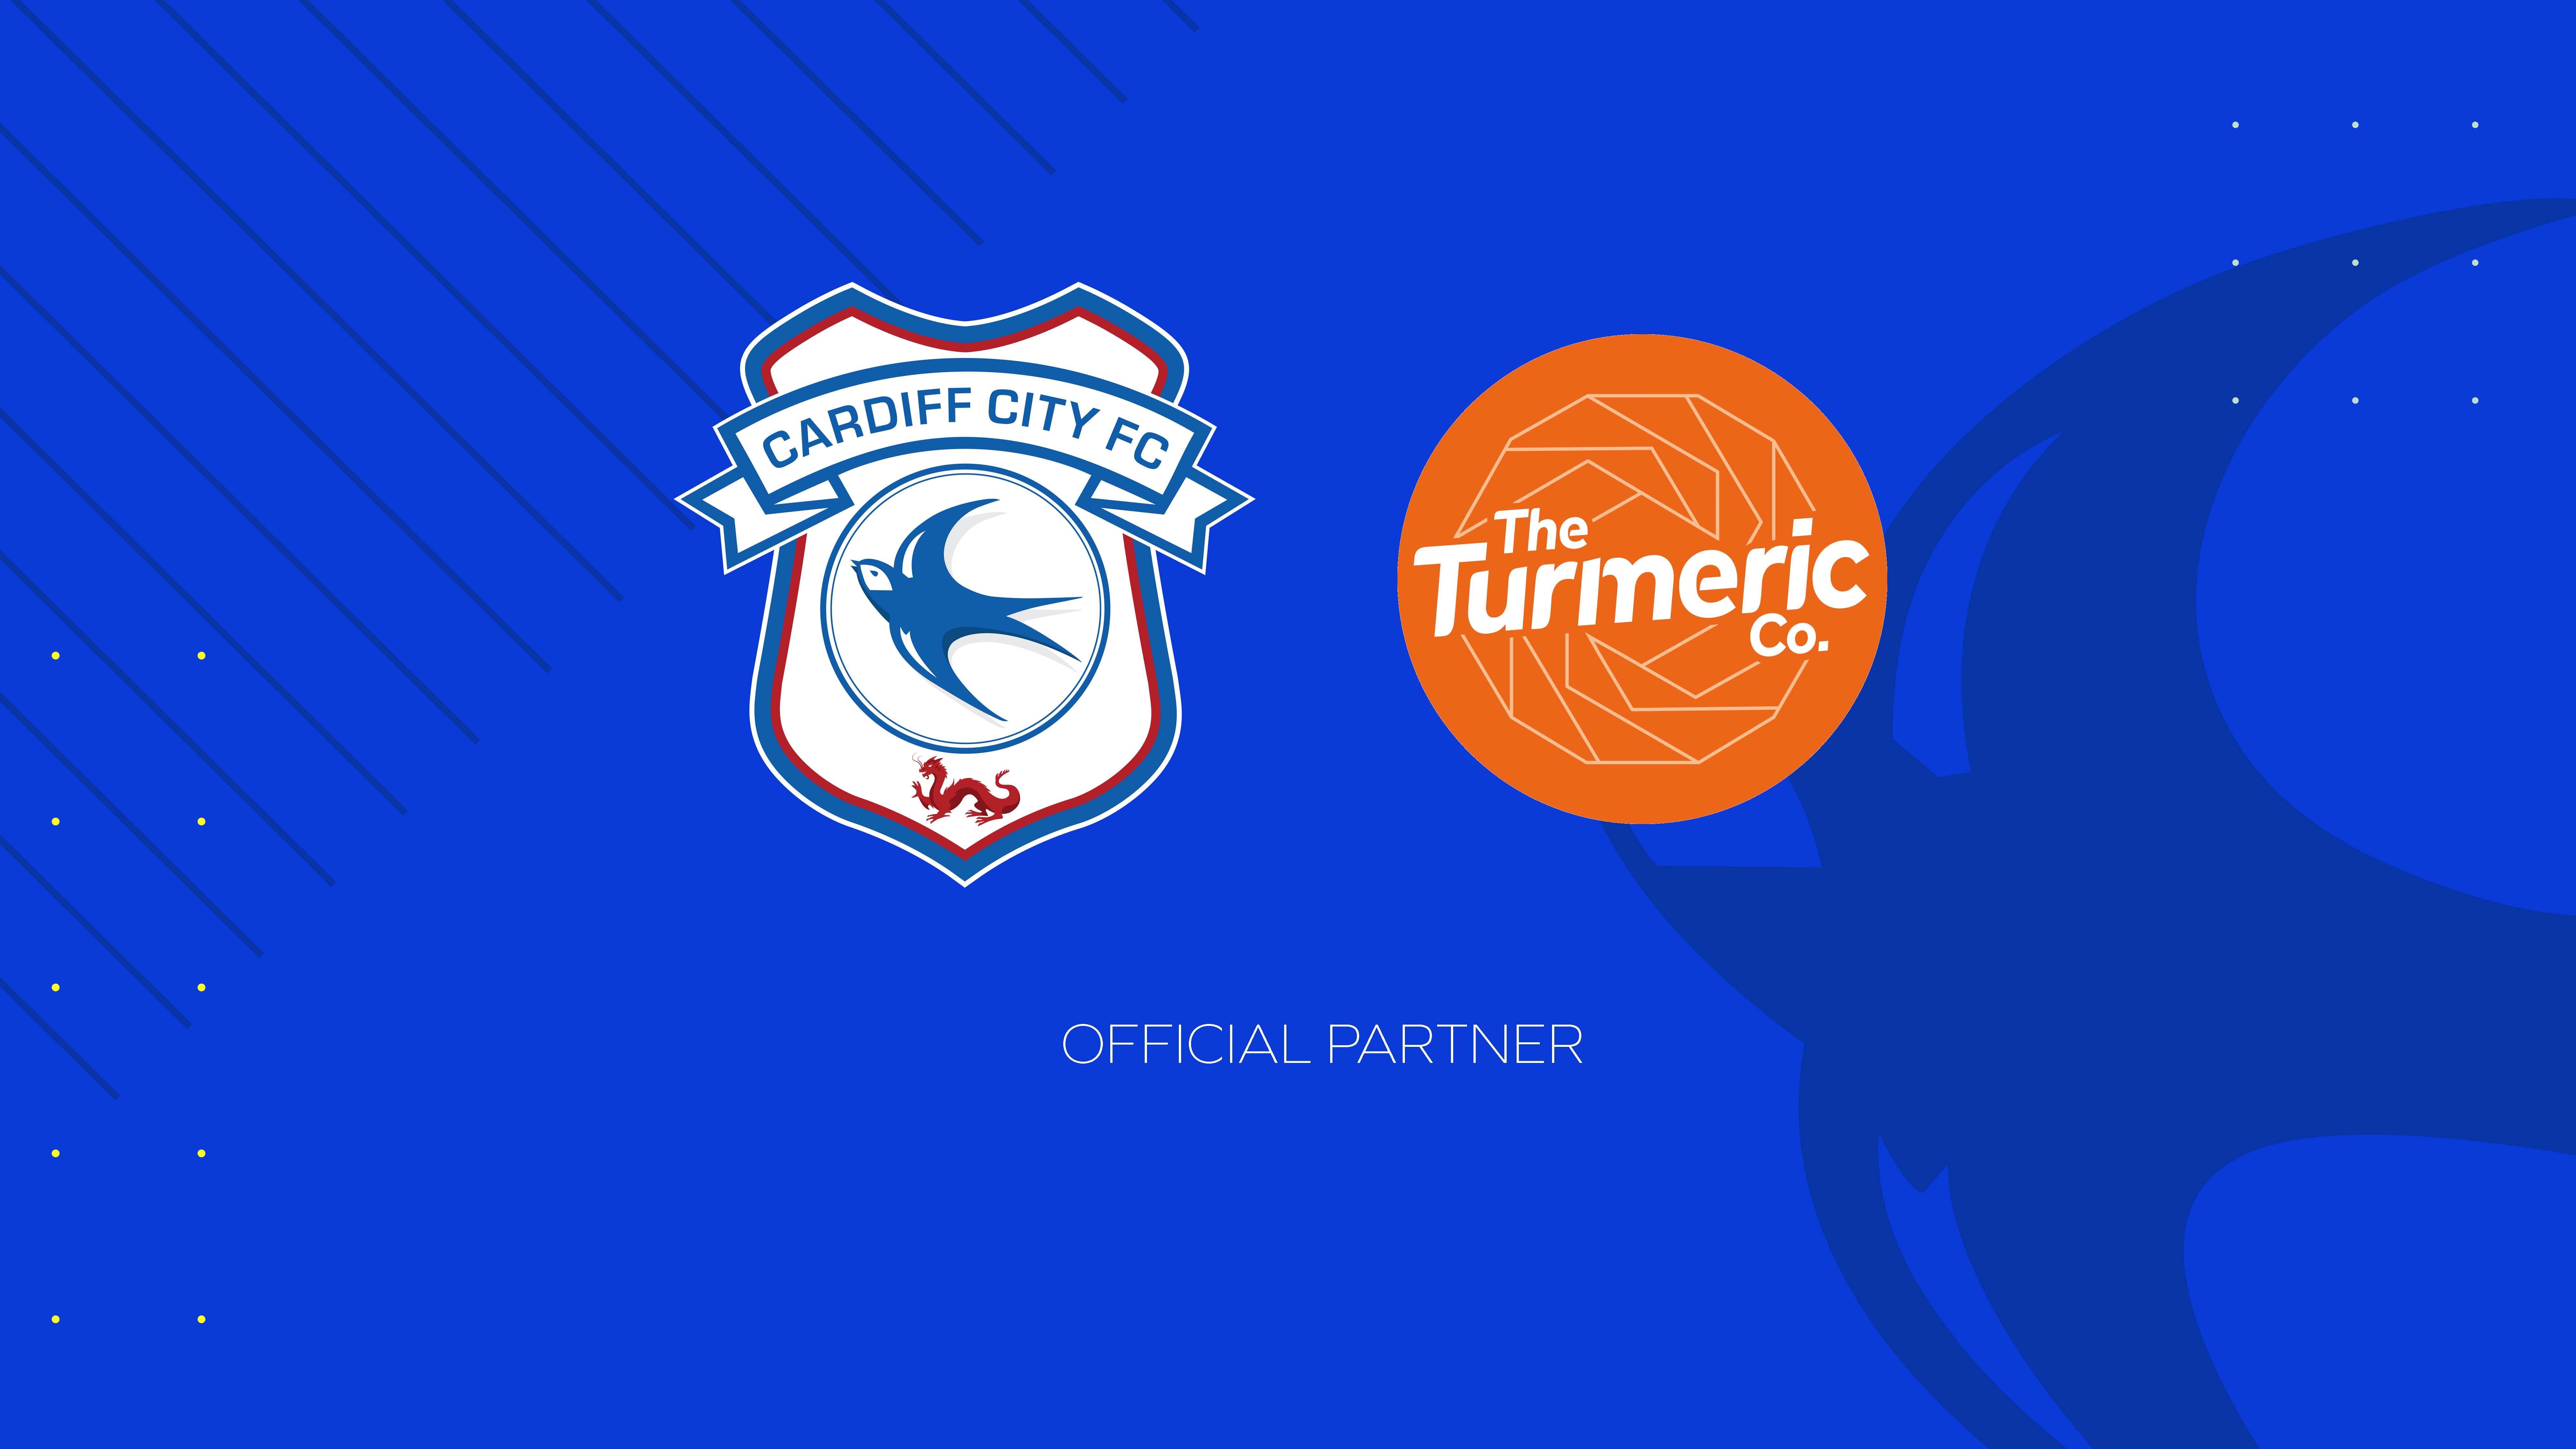 The Turmeric Co. & Cardiff City...